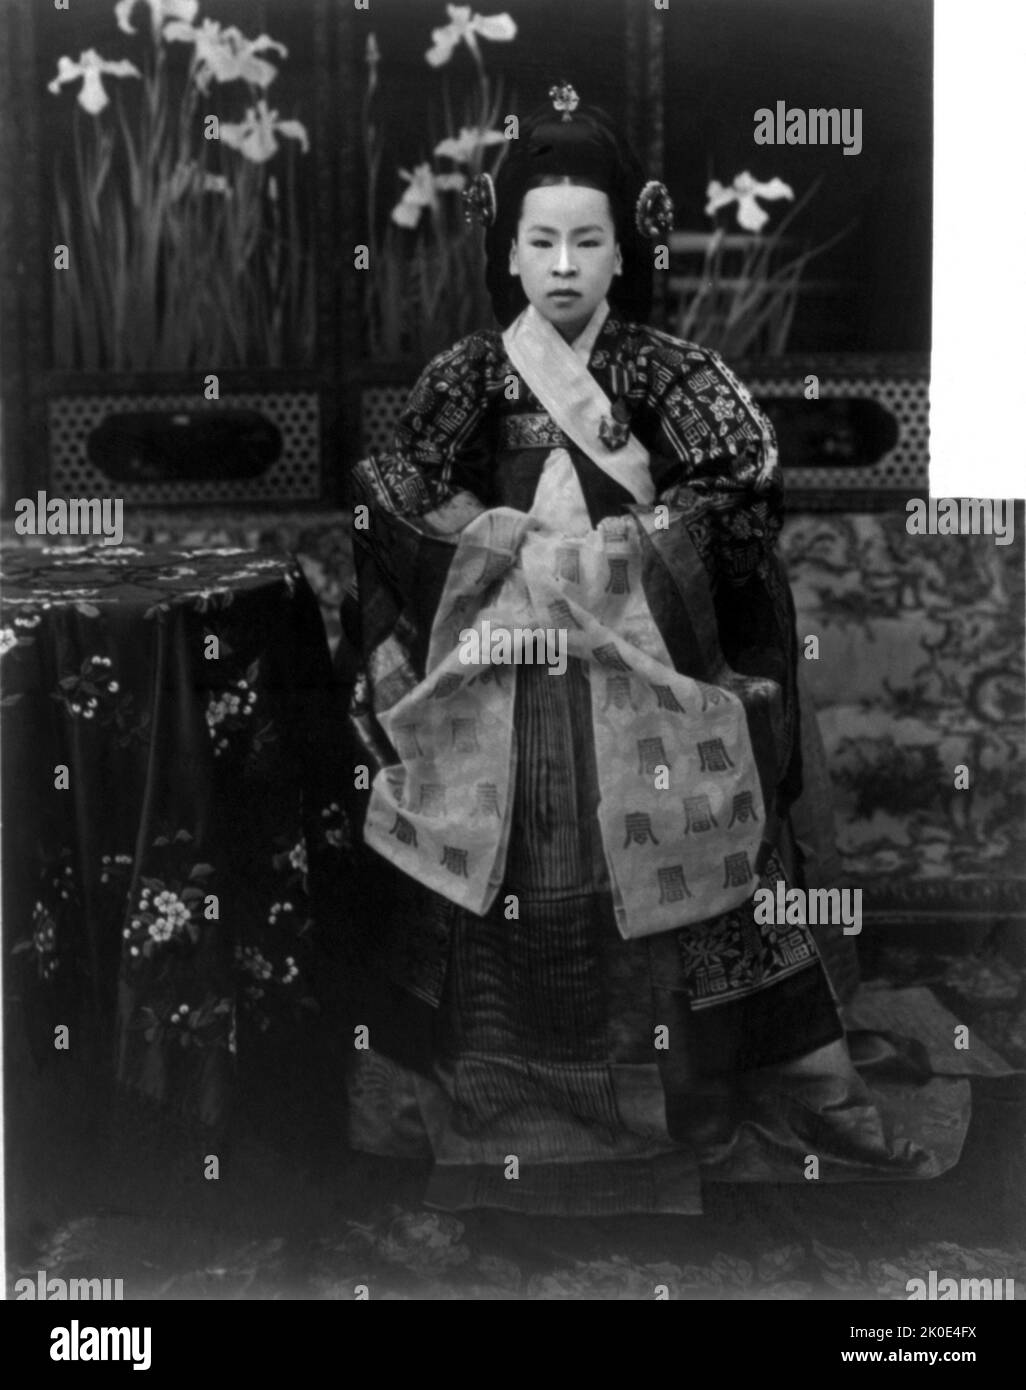 L'impératrice Sunjeonghyo (1894 - 1966), du clan Haepyeong Yun, était la deuxième épouse et épouse de l'impératrice Consort de l'empereur Yunghui, le dernier empereur de la dynastie Joseon, l'Empire coréen. Banque D'Images